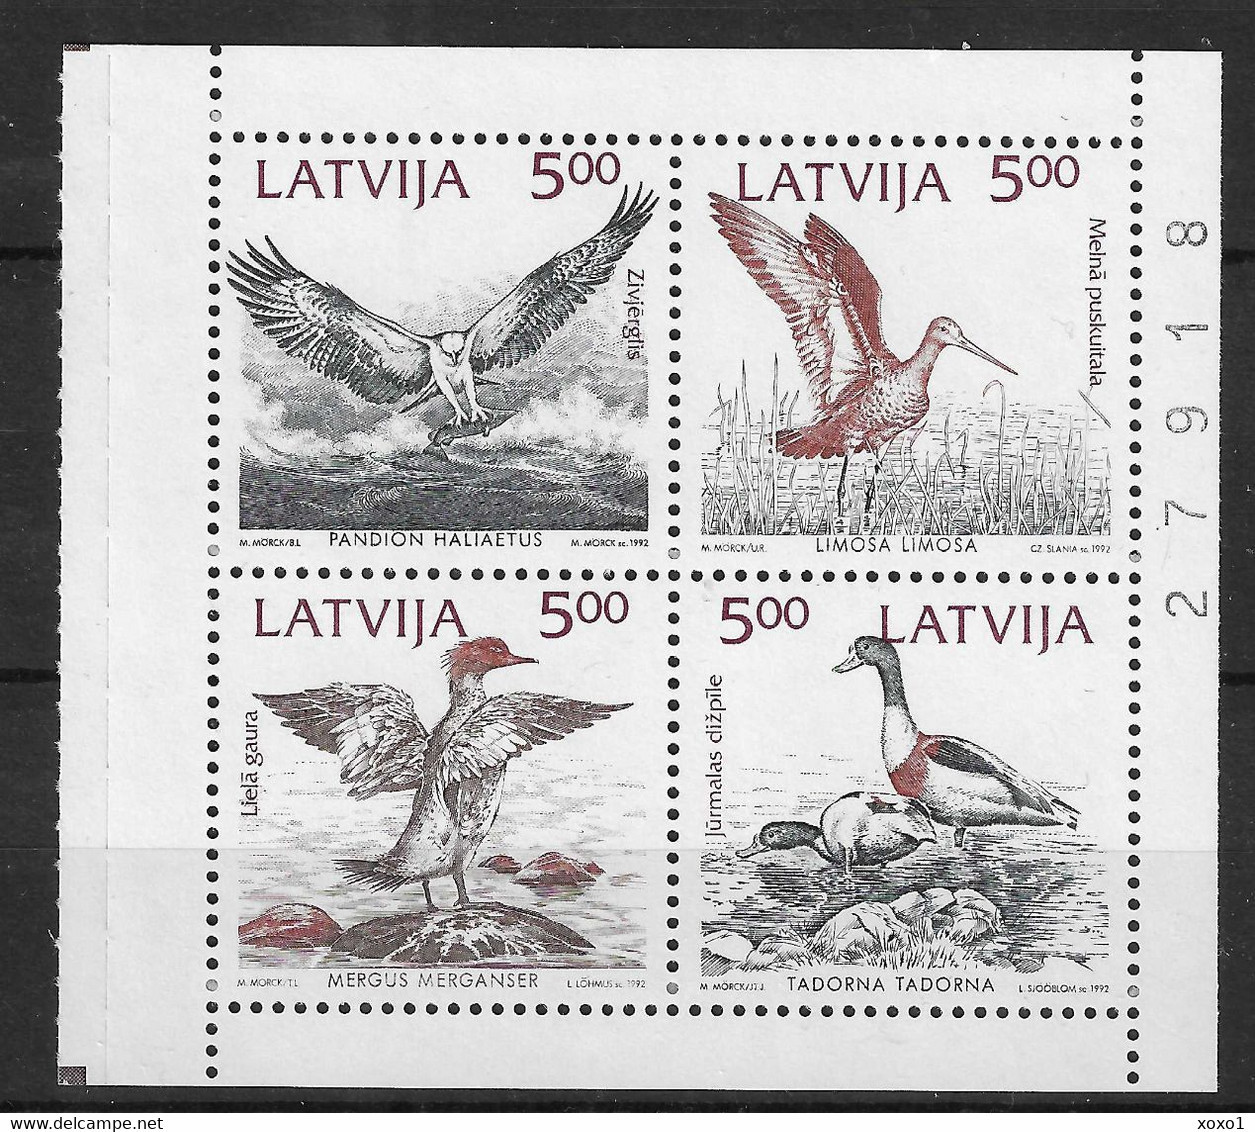 LATVIA 1992 MiNr. 340-3 Lettland Joint Issues BIRDS Osprey, Black-tailed Godwit, Merganser, Shelduck  4v Mnh ** 3,00 € - Letland